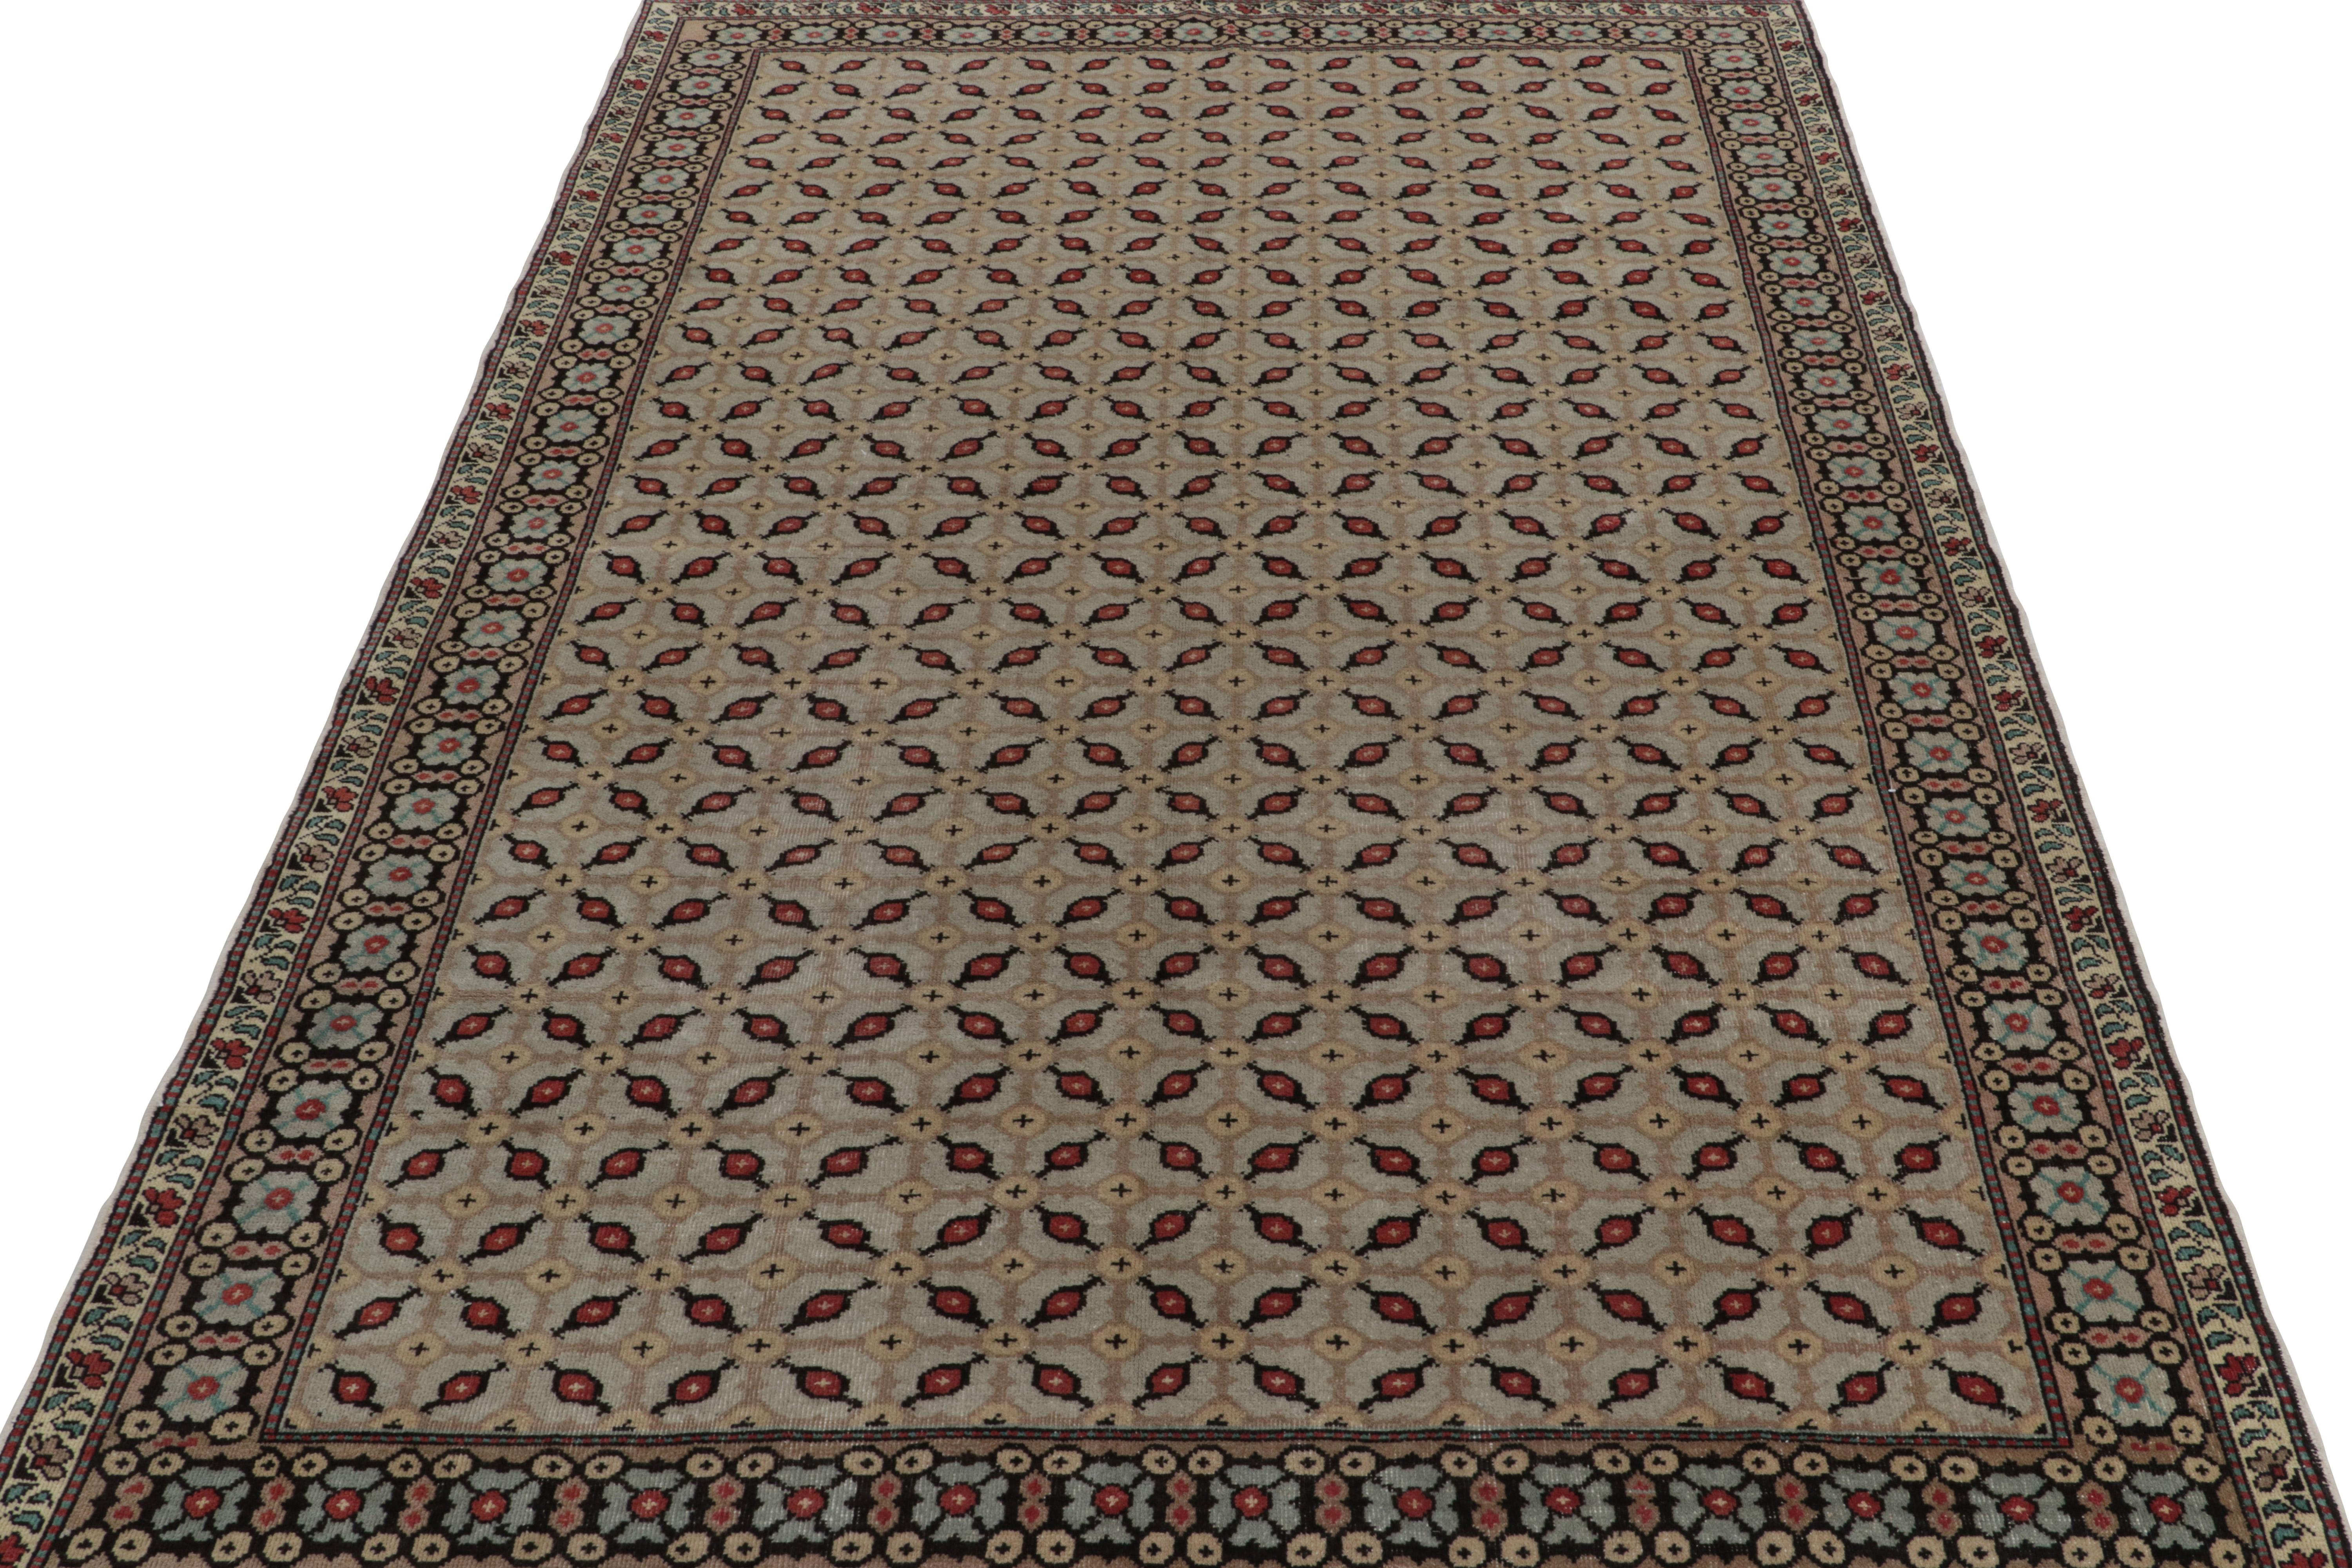 Tribal 1960s Vintage Distressed Rug in Beige-Brown Geometric Pattern by Rug & Kilim For Sale